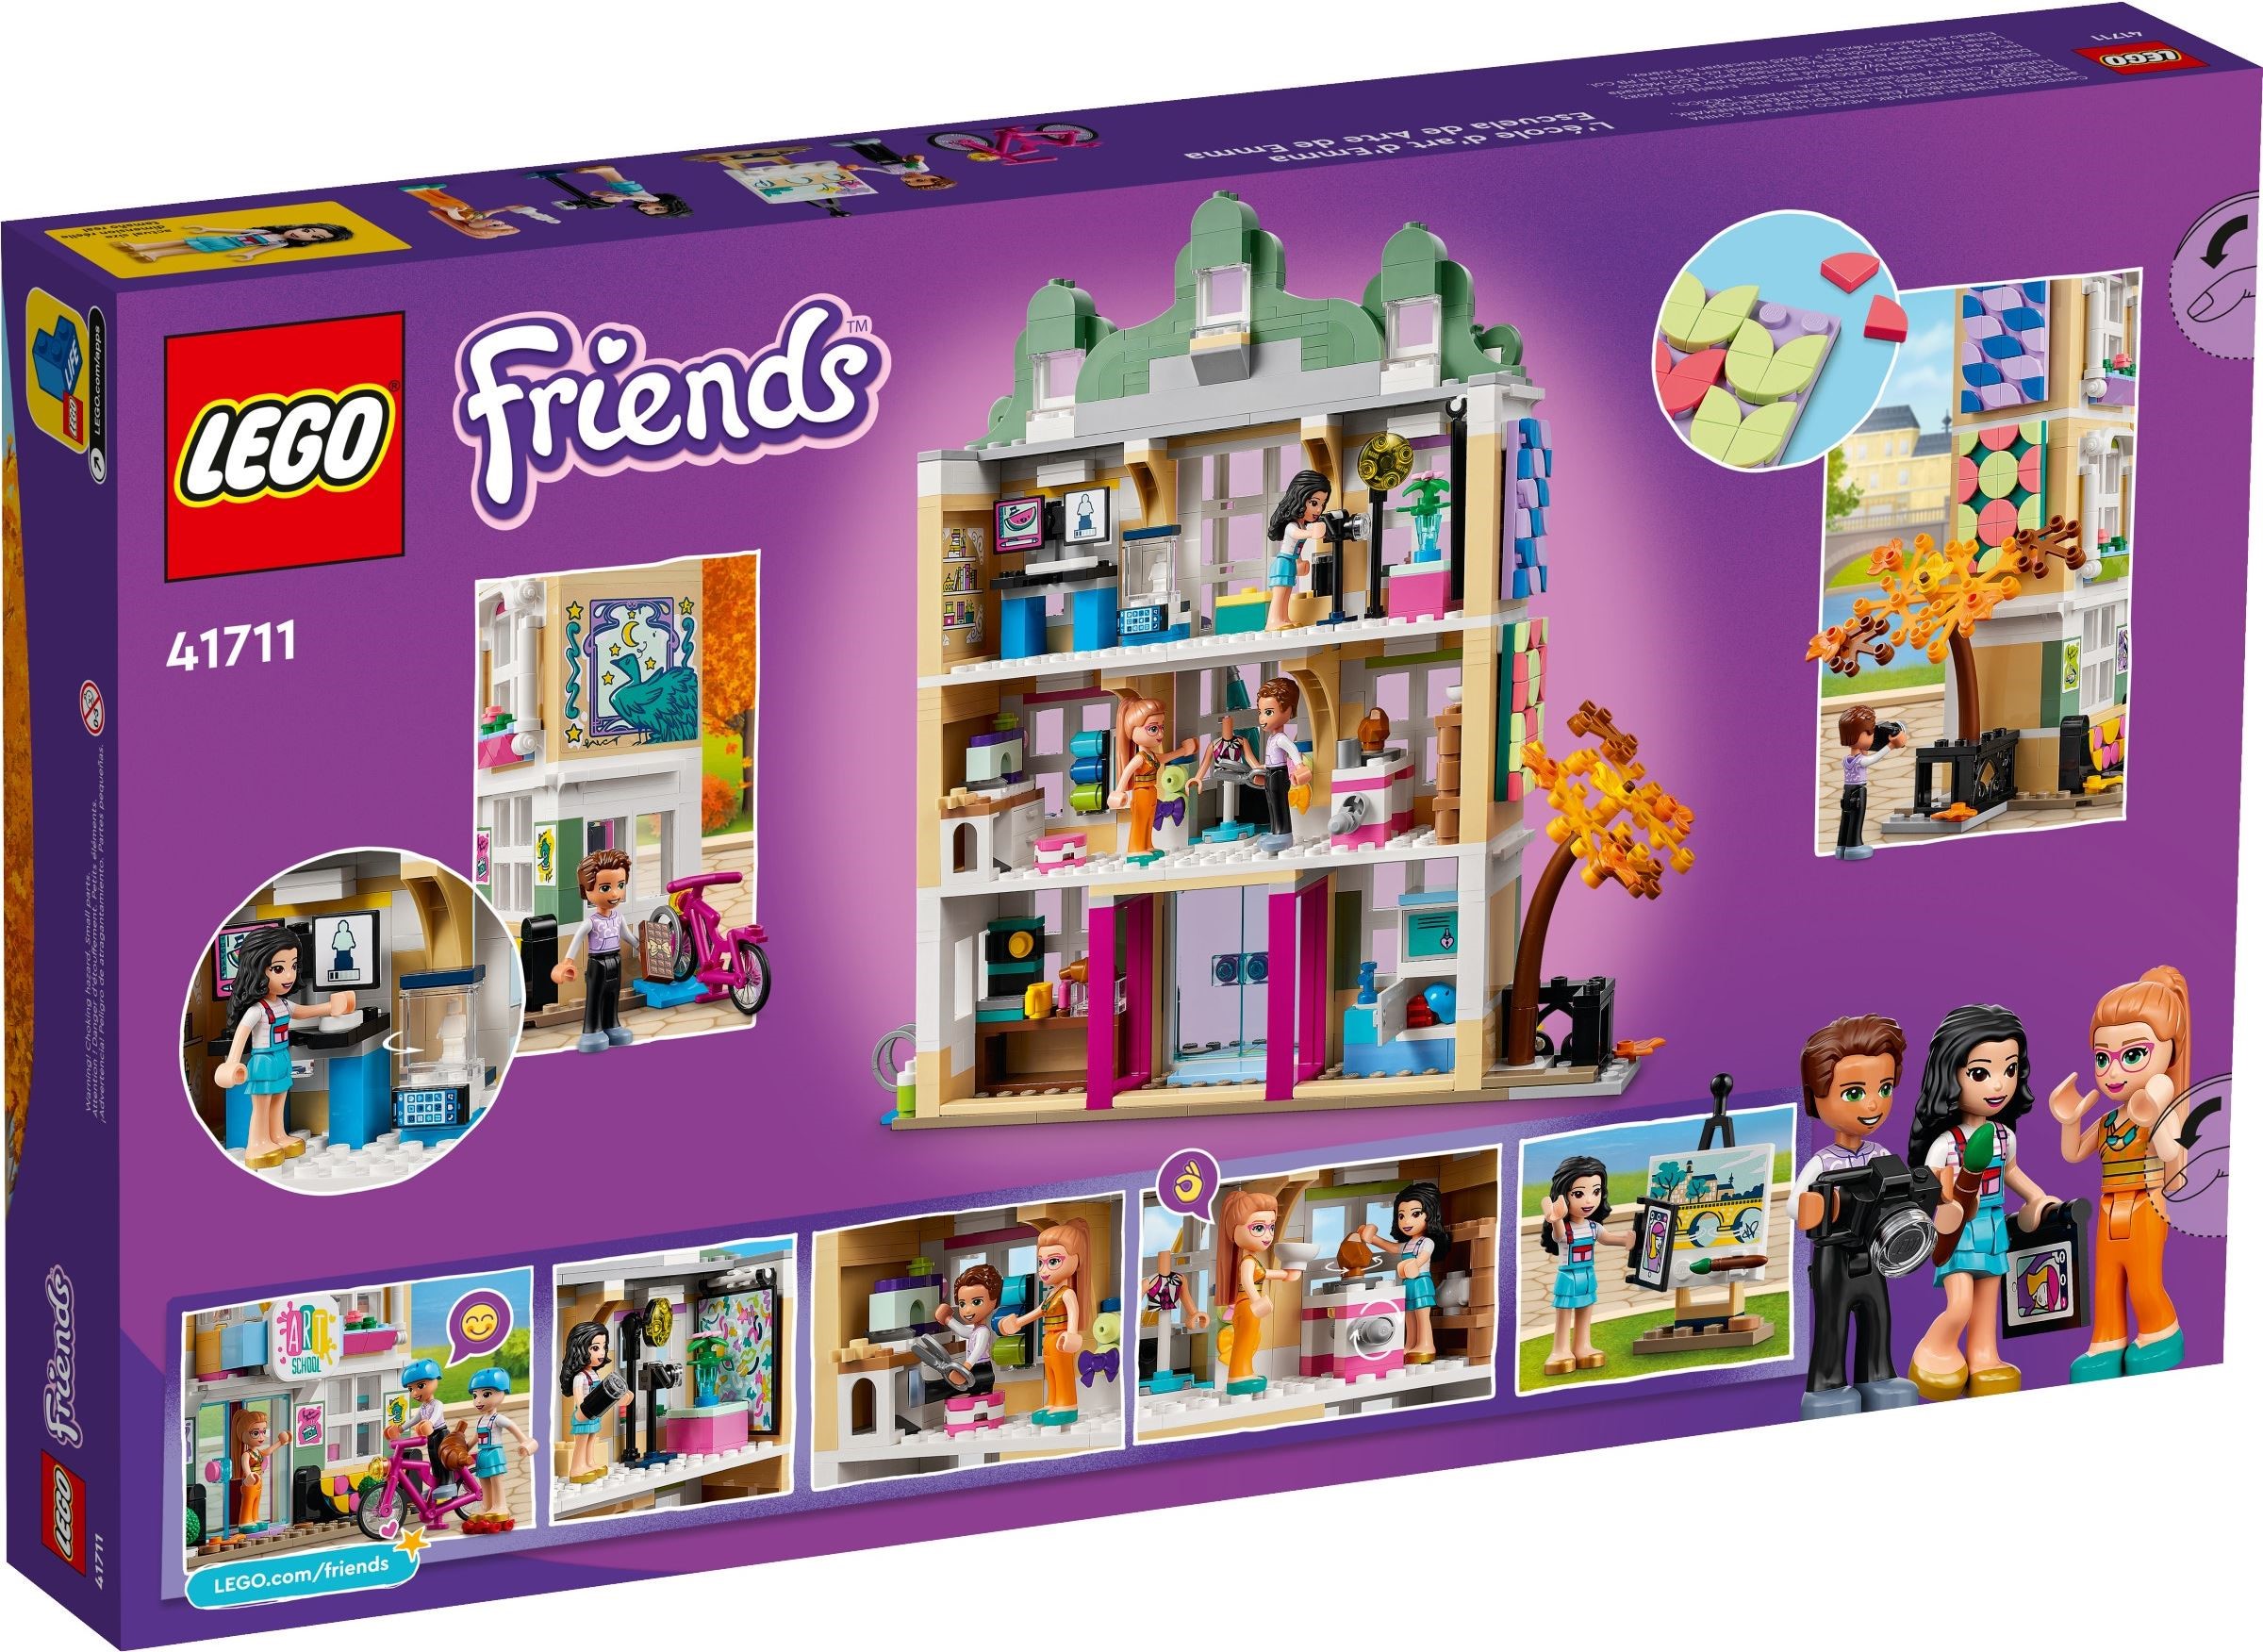 LEGO® Friends 41711 - Emmas Kunstschule